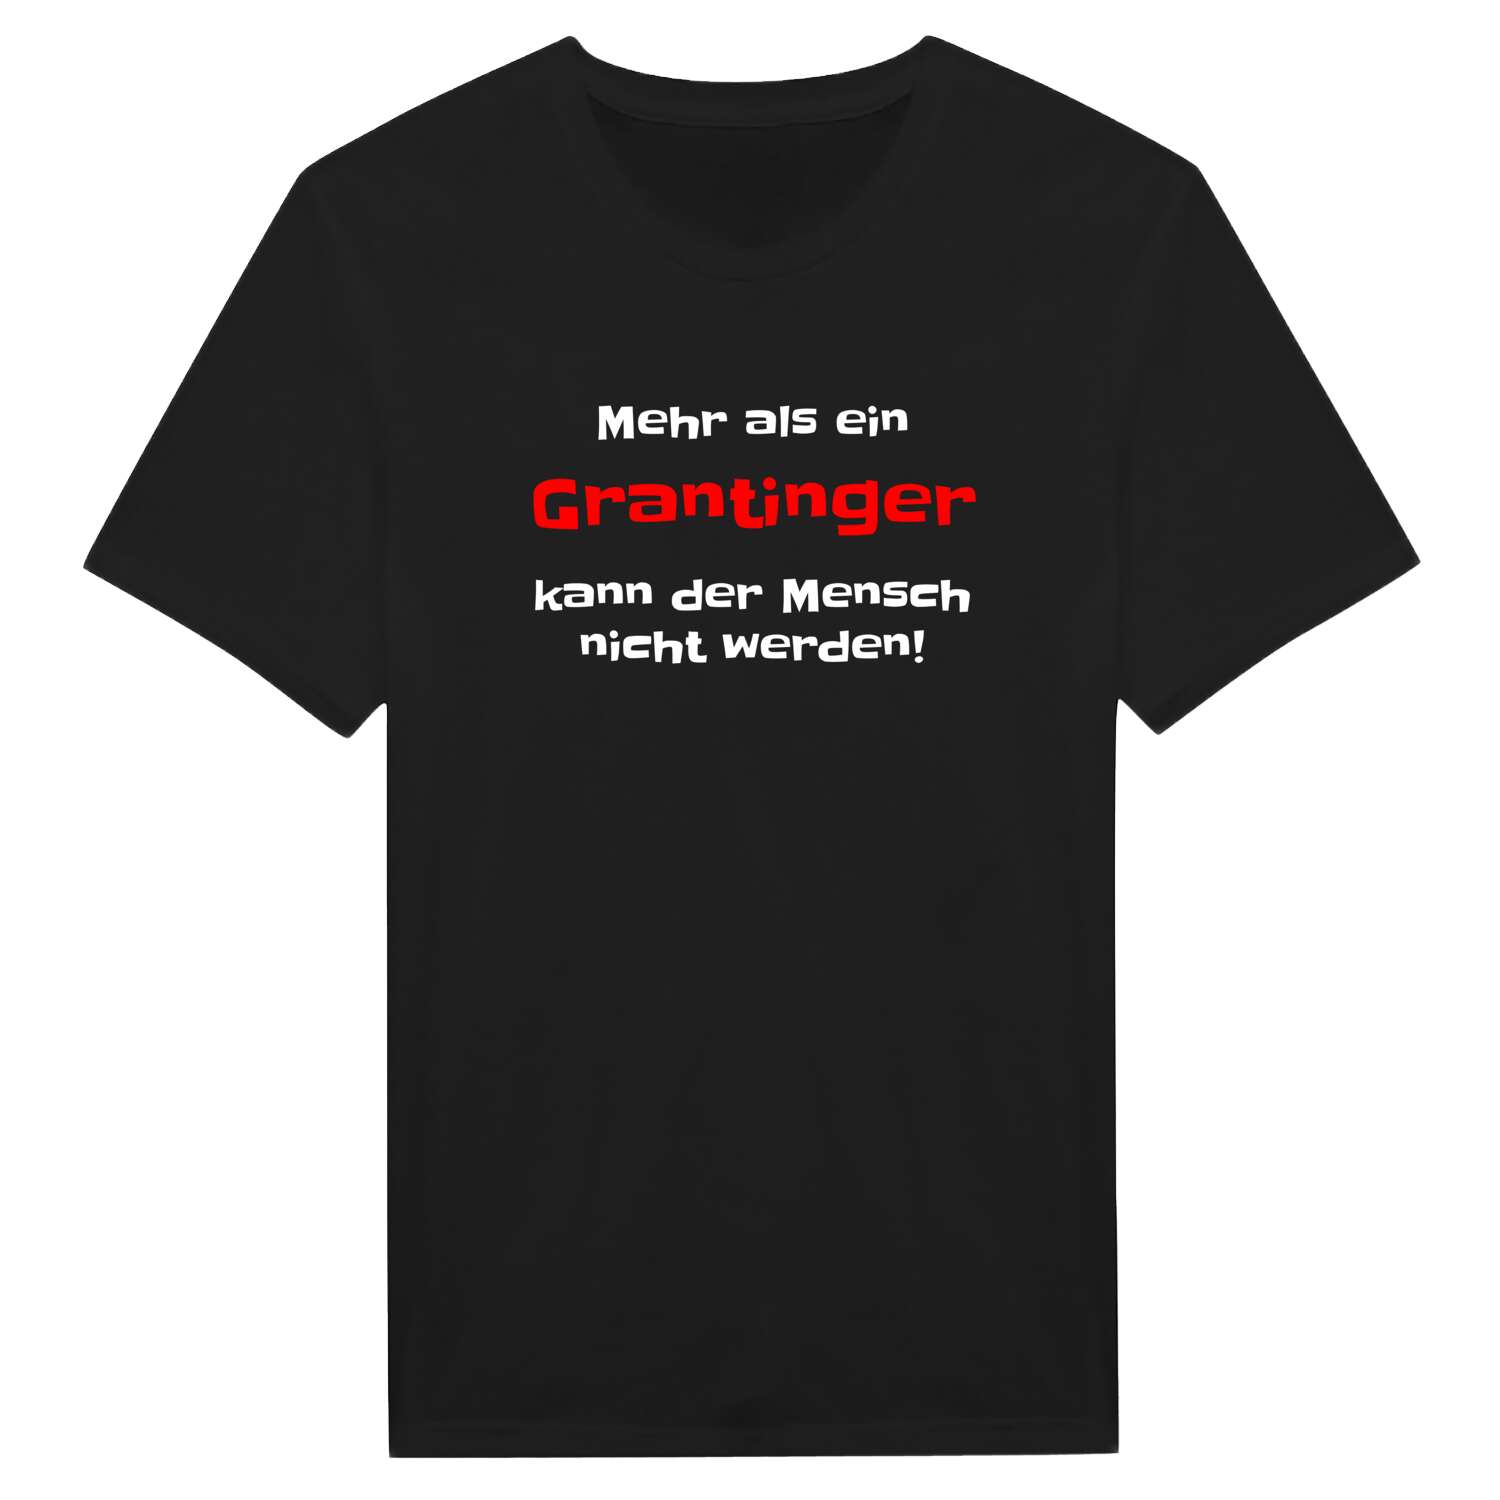 Granting T-Shirt »Mehr als ein«